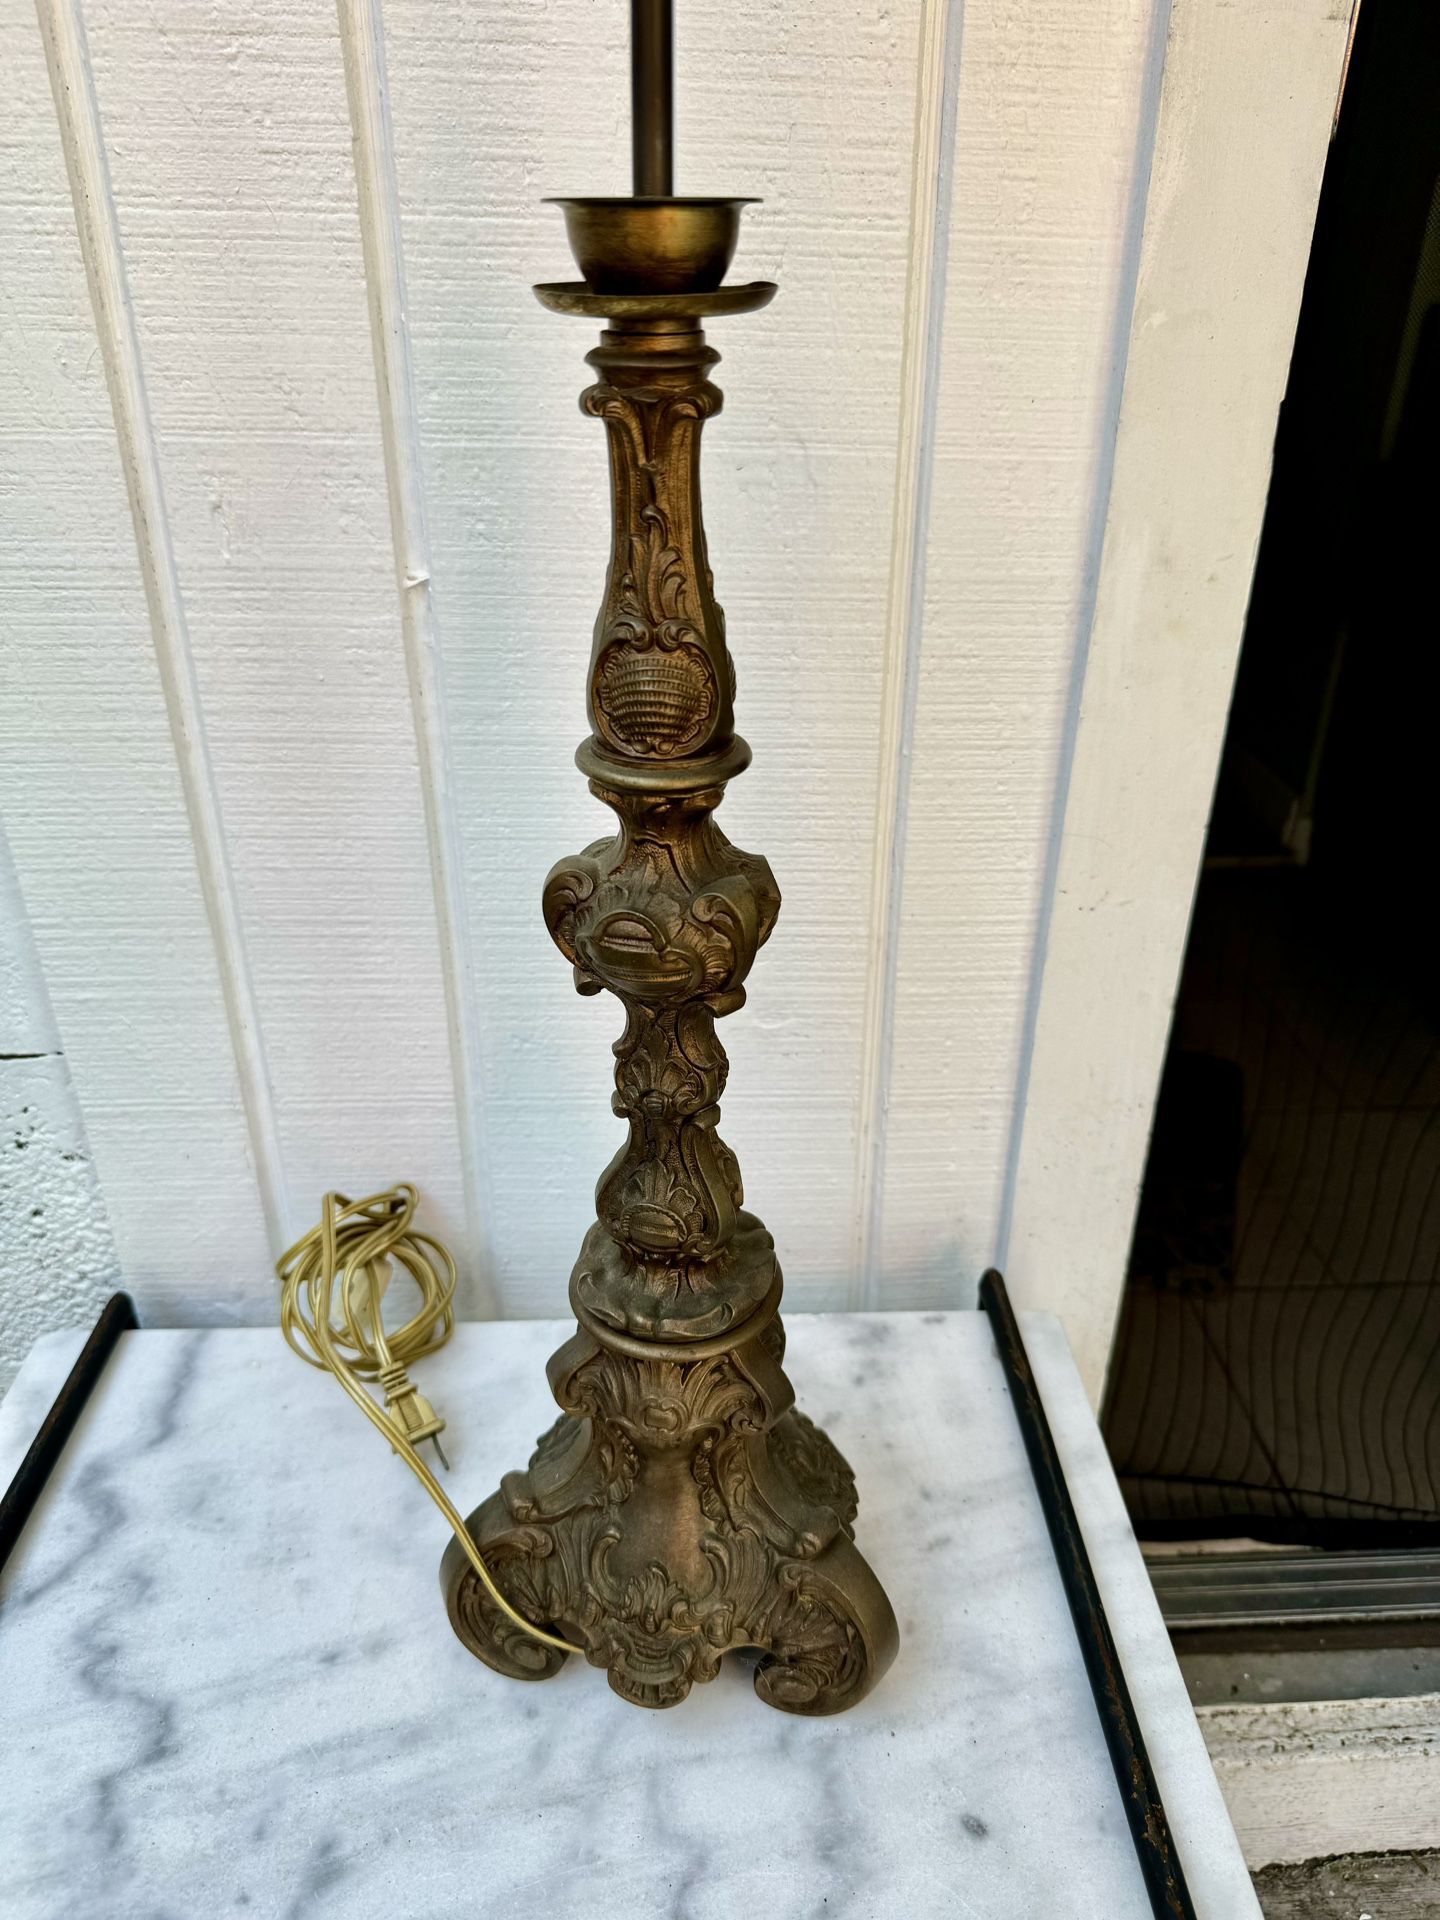 Antique Bronze Lamp $25